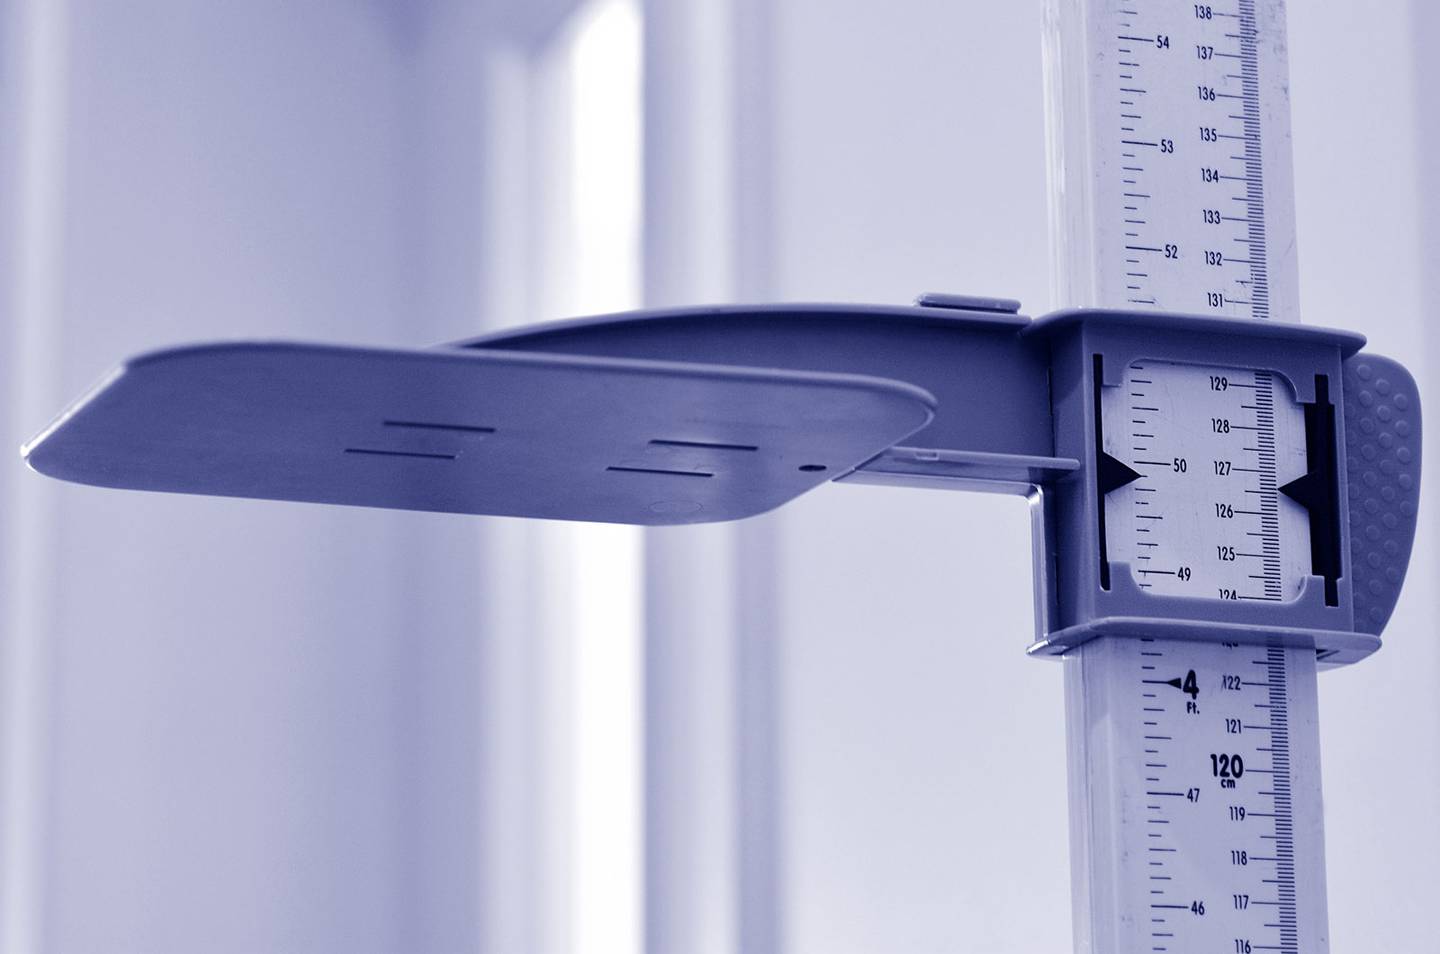 IMC y medición de cintura, los métodos más usados para detectar obesidad